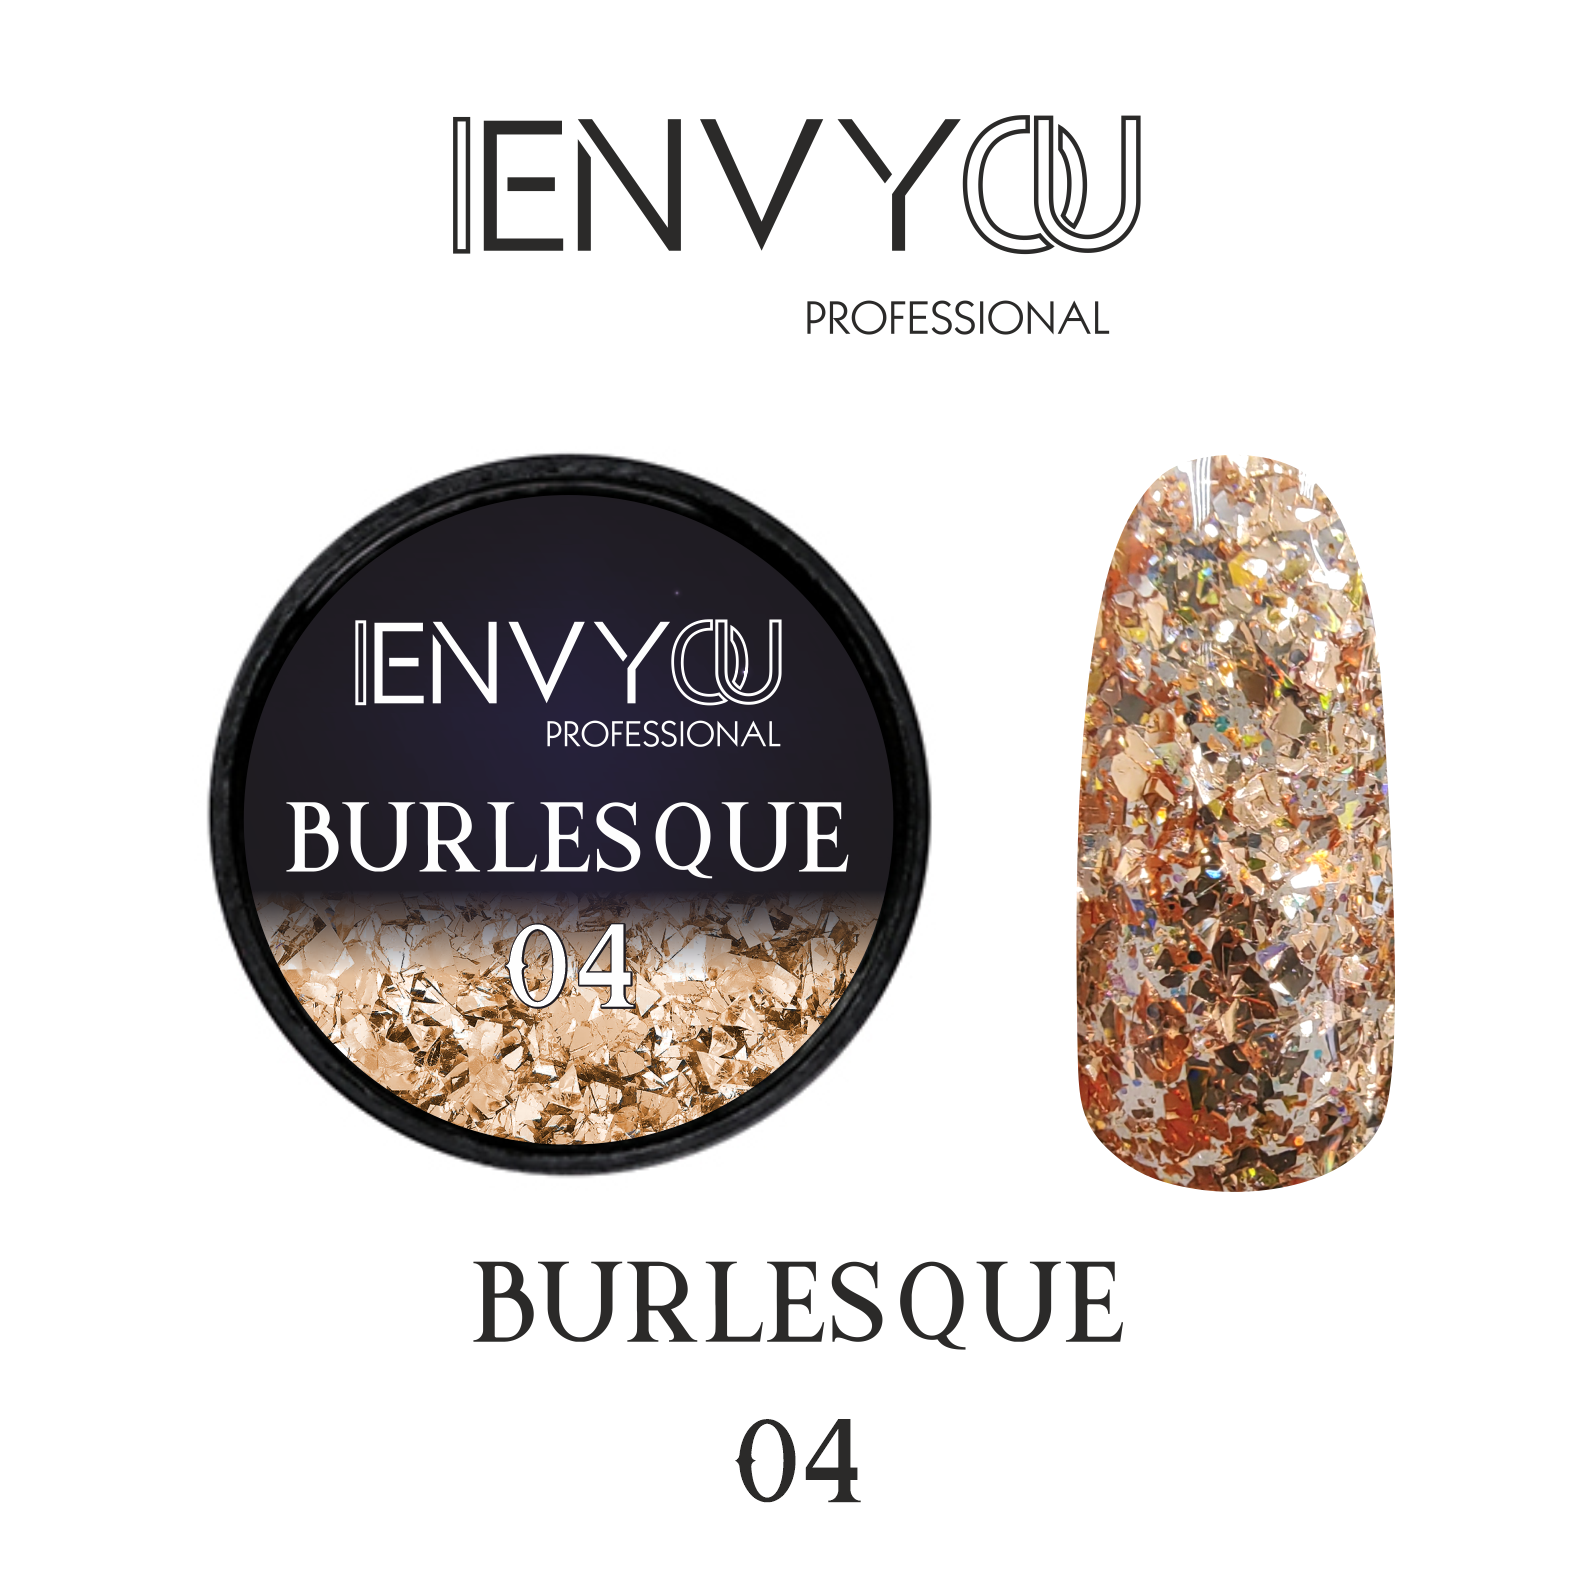 ENVY Burlesque 04 6g